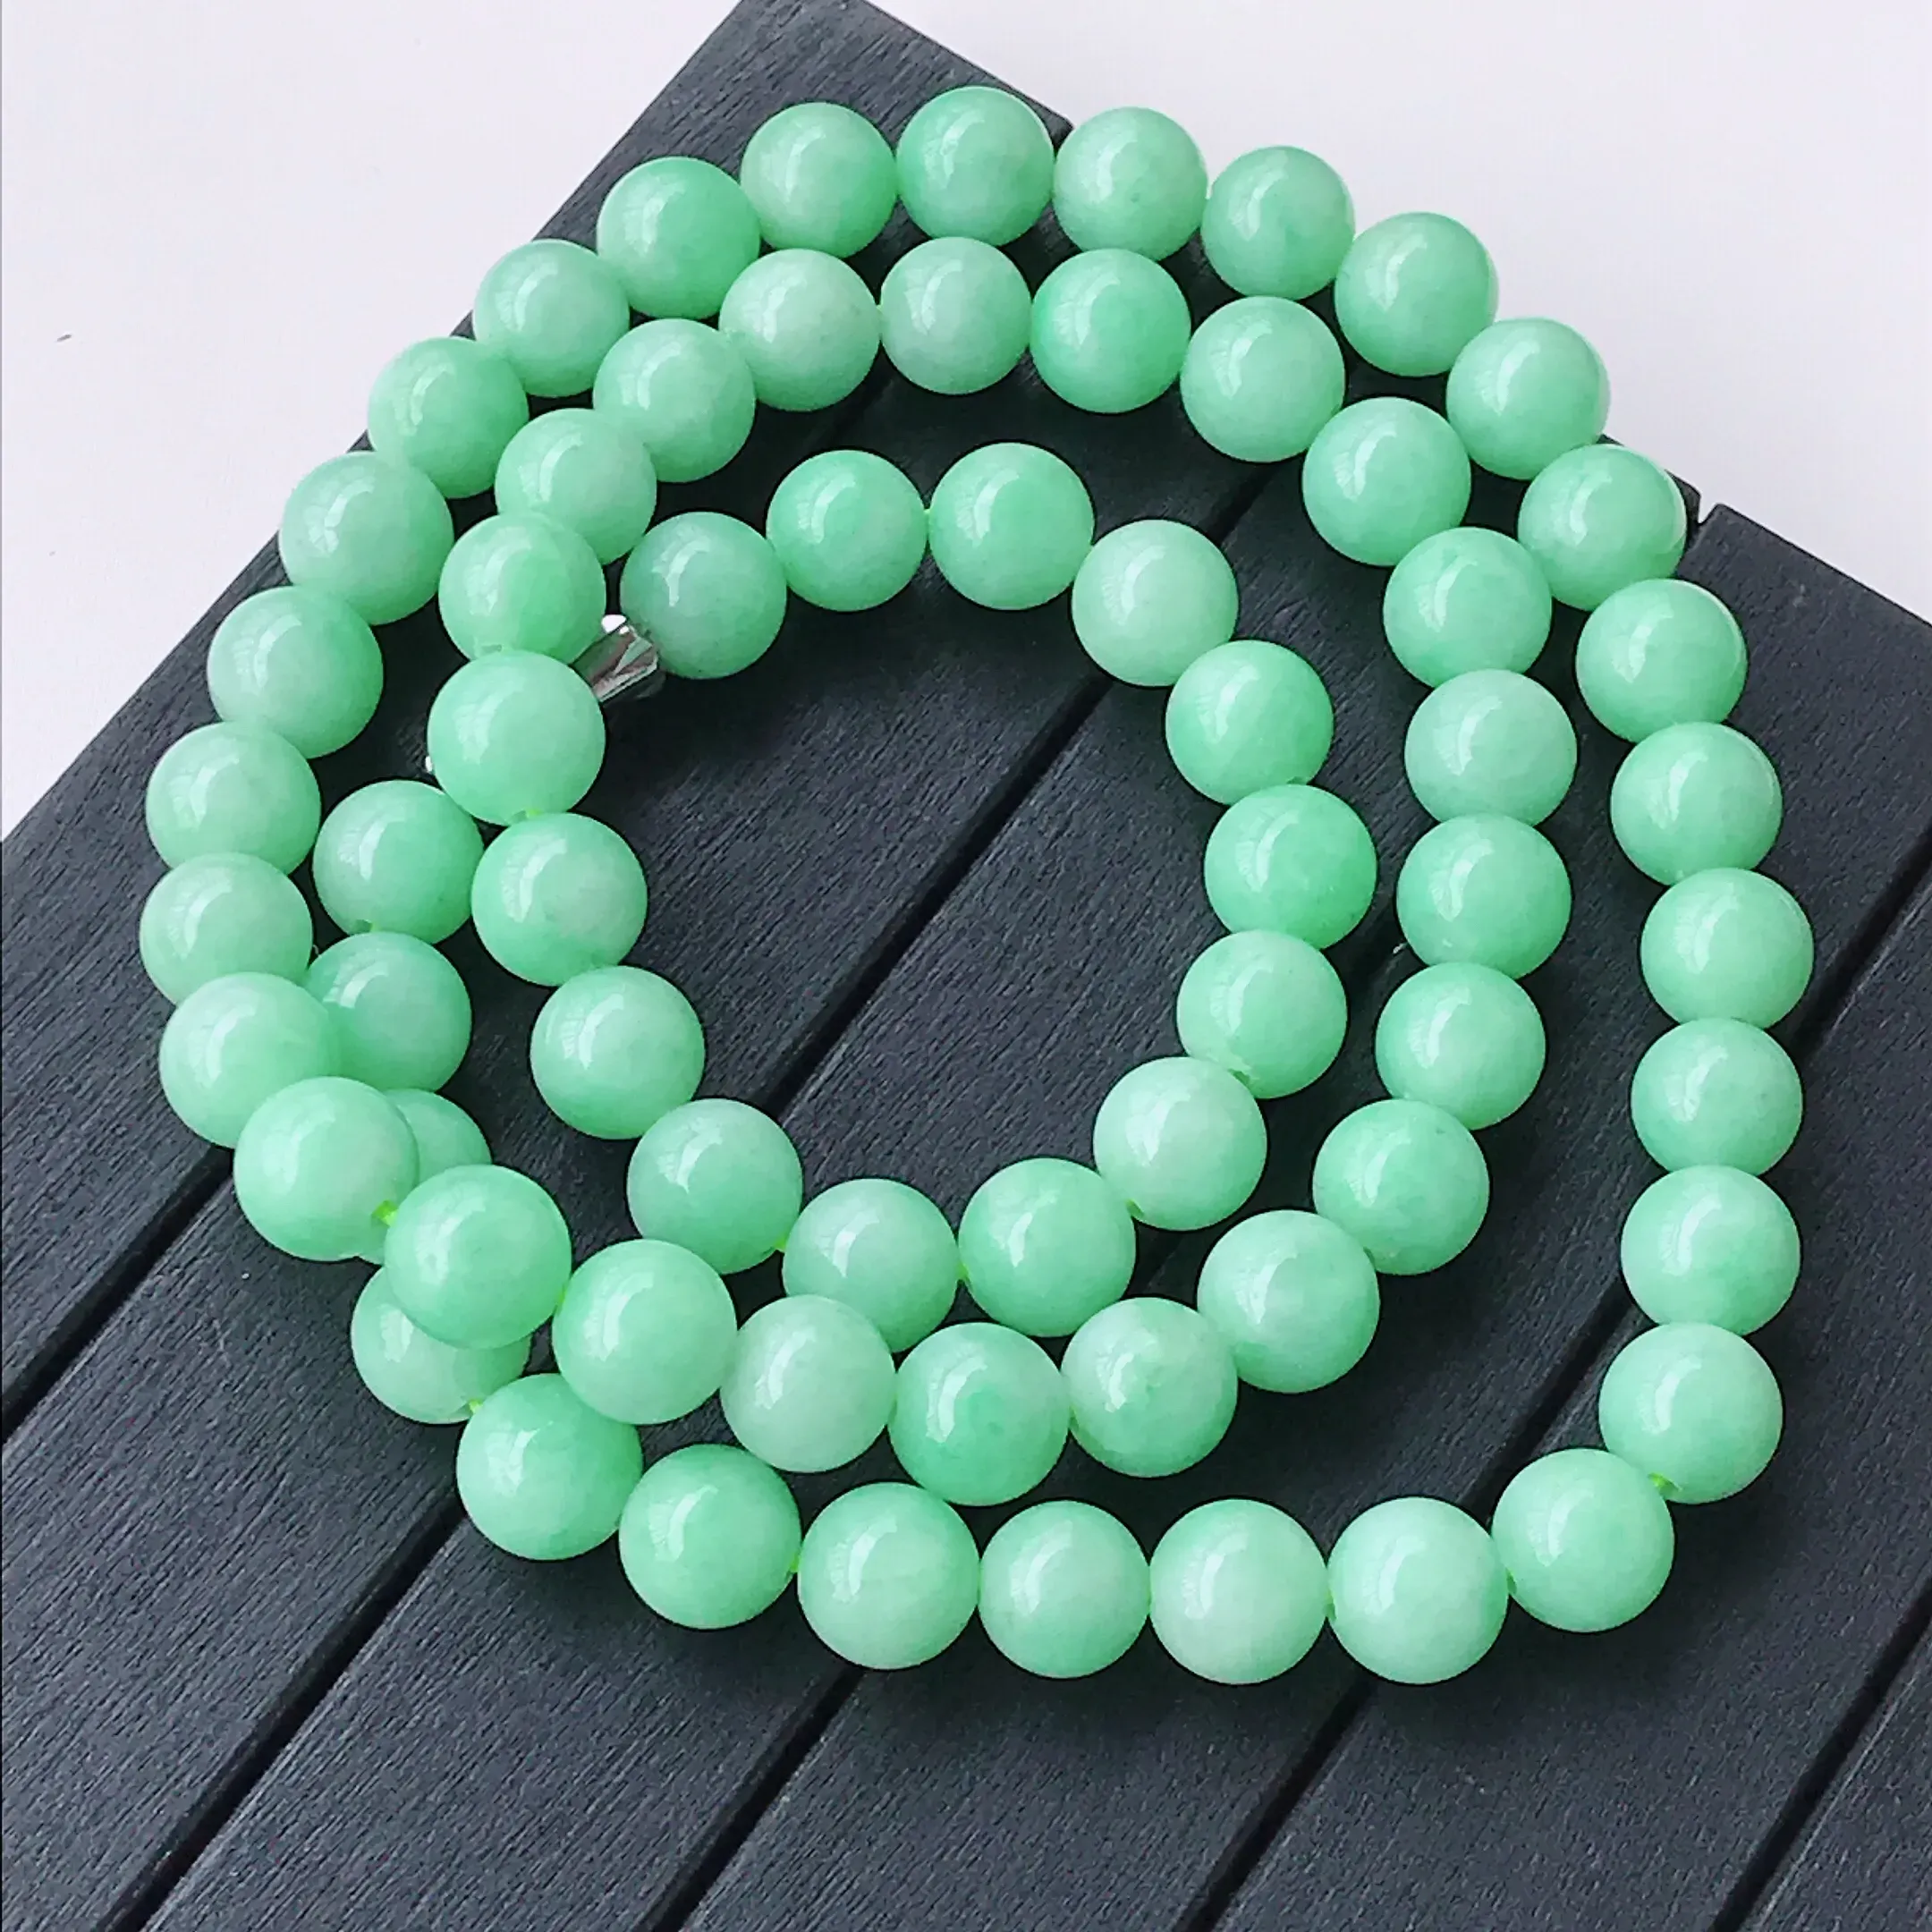 水润满绿精美圆珠翡翠项链  玉质细腻  冰清玉润  颜色漂亮  尺寸直径8.5扣头为配饰扣头